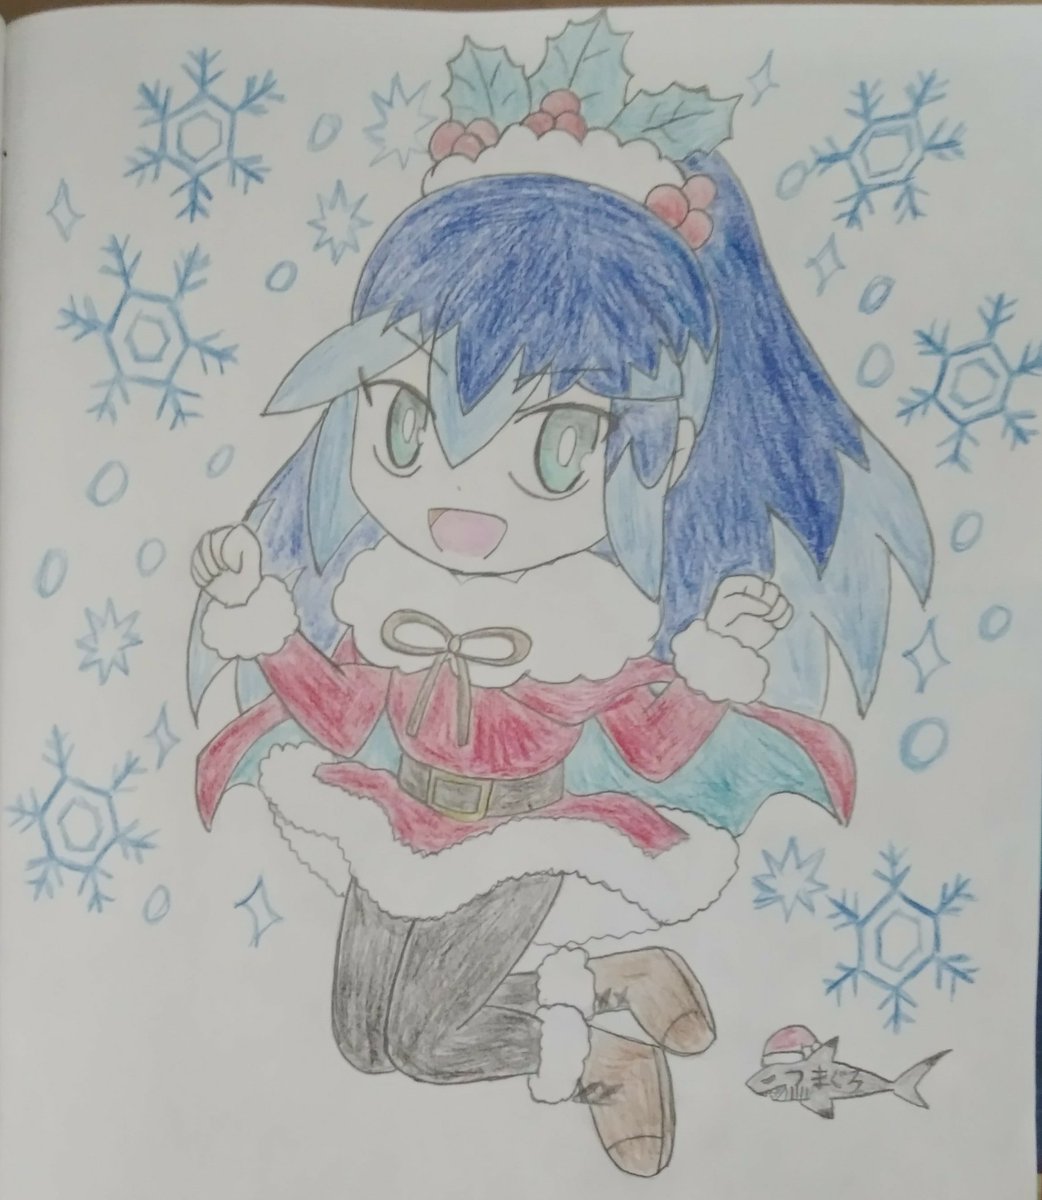 カロスチャンピオンつまぐろ クリスマスウォッチ ふぶき姫 ふぶき姫サンタ スカートを思いっ切りフワッとさせてみました 背景の雪の華が写りにくくて濃くしました